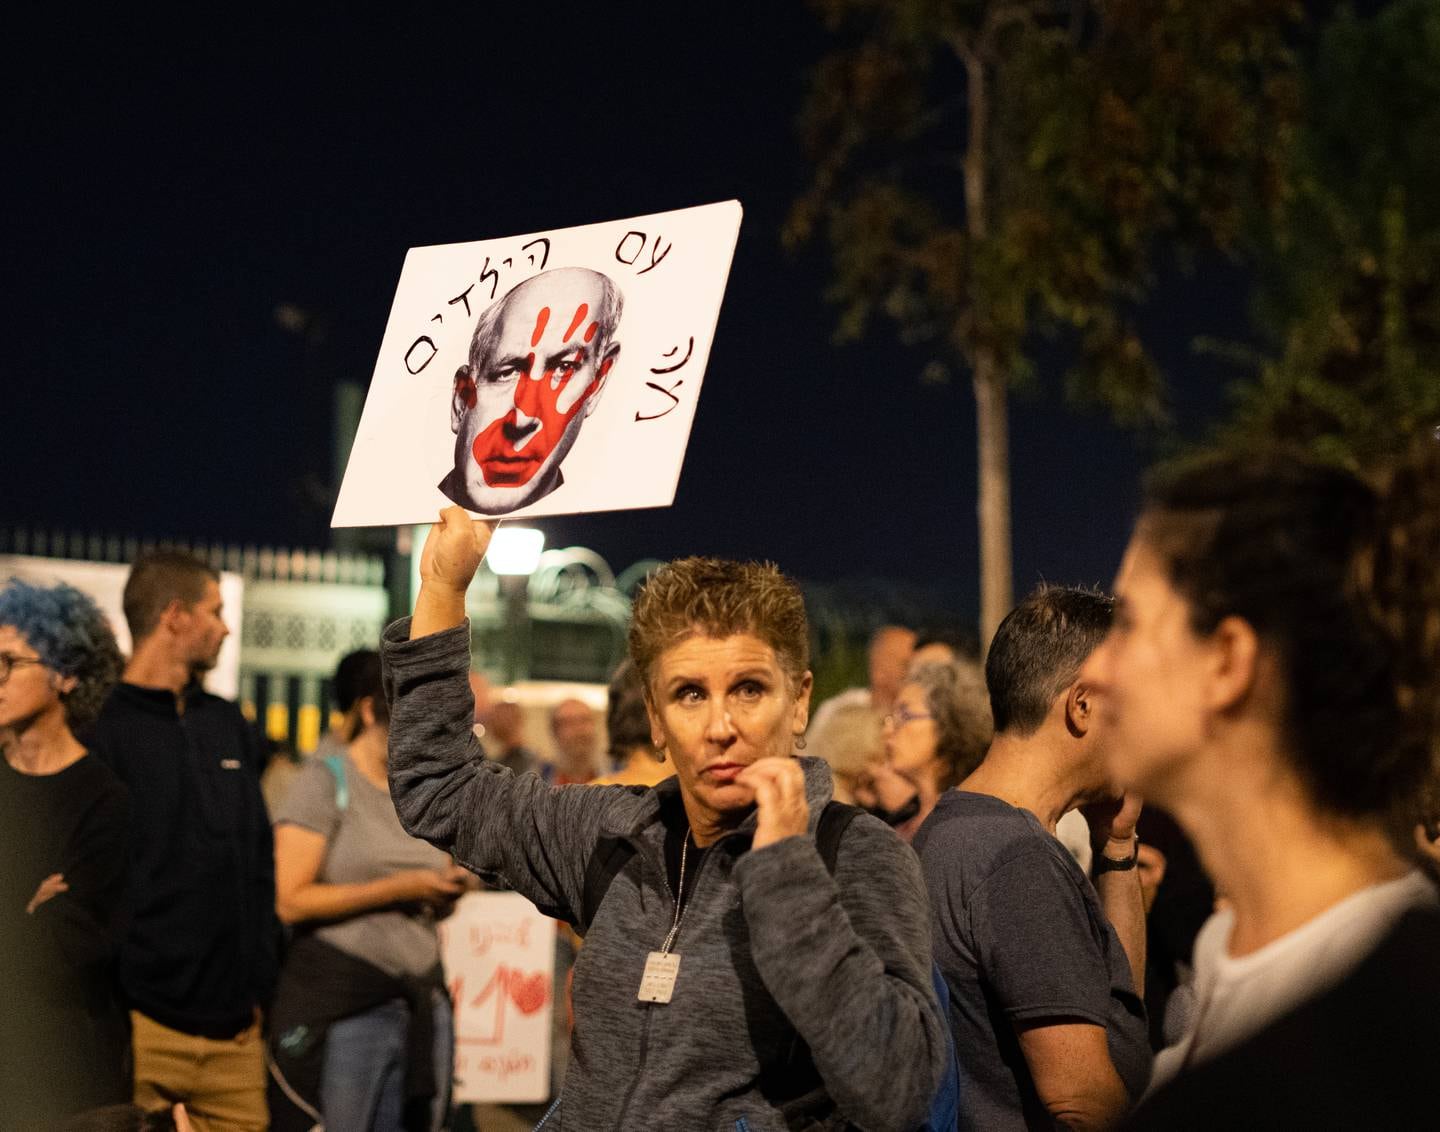 Gymlæreren Rachel holder opp en plakat med bilde av Israels statsminister Benjamin Netanyahu, som har en blodig hånd over ansiktet.